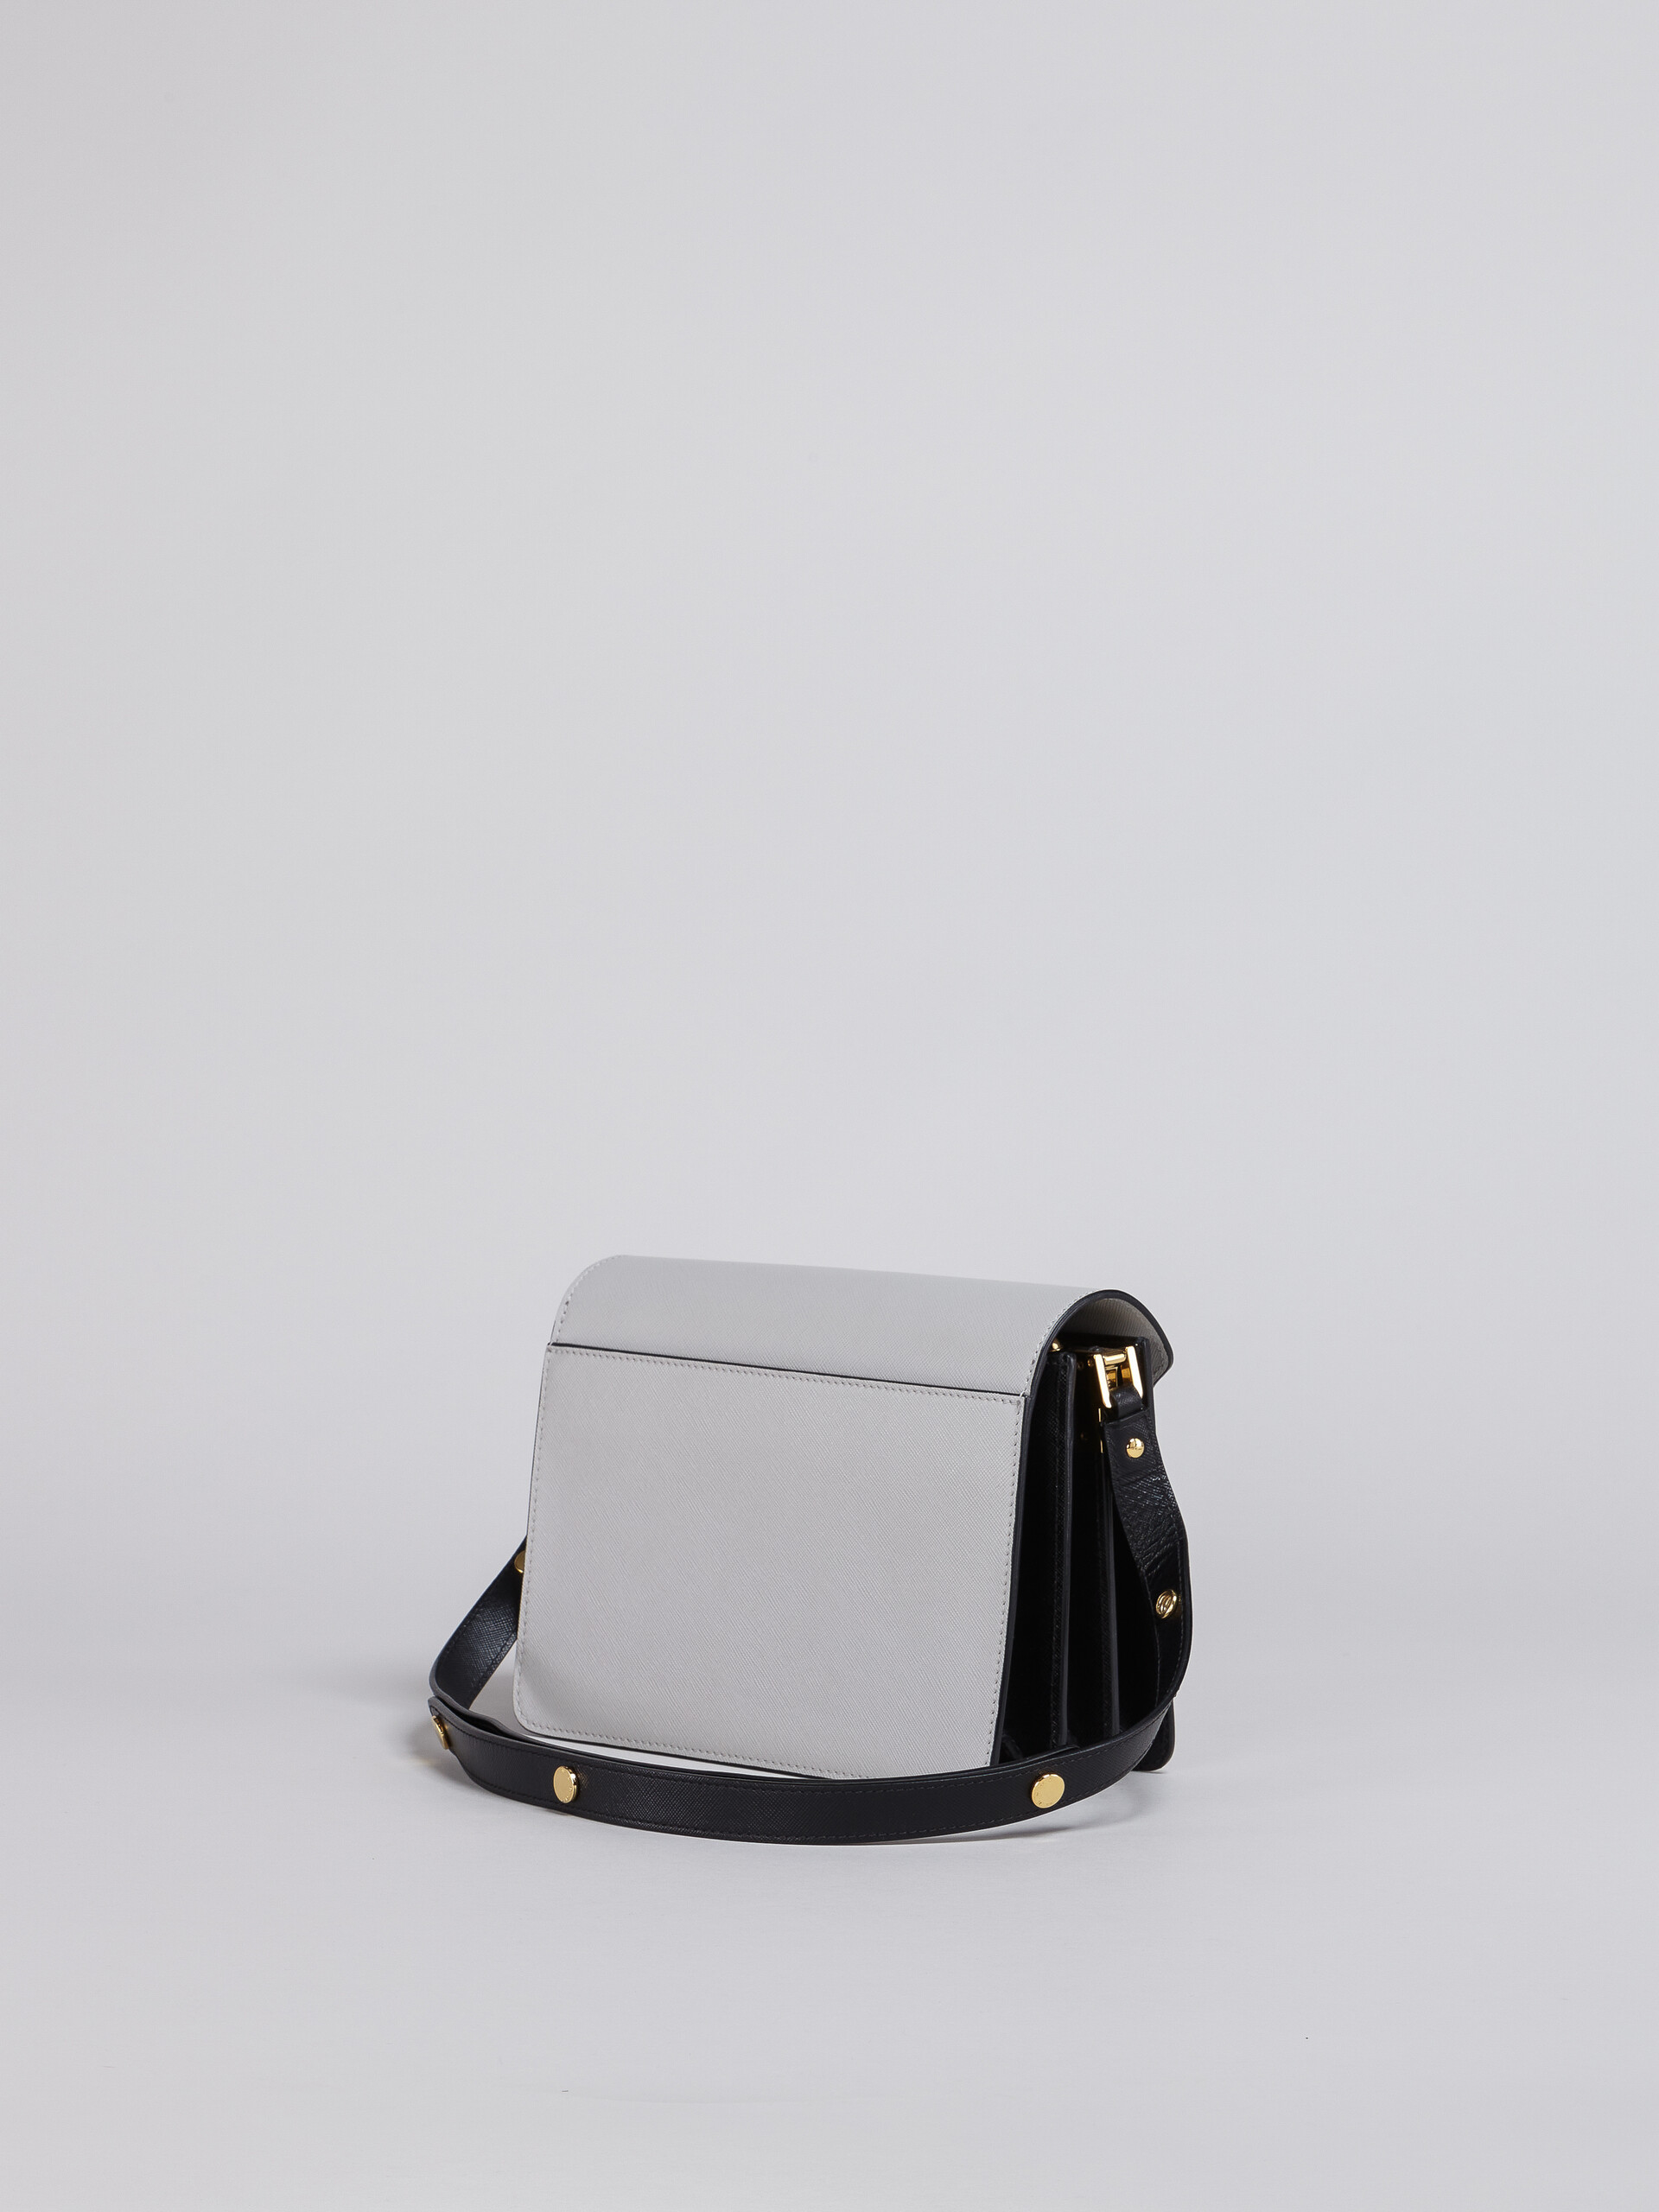 TRUNK bag in vitello saffiano grigio marrone e nero - Borse a spalla - Image 2